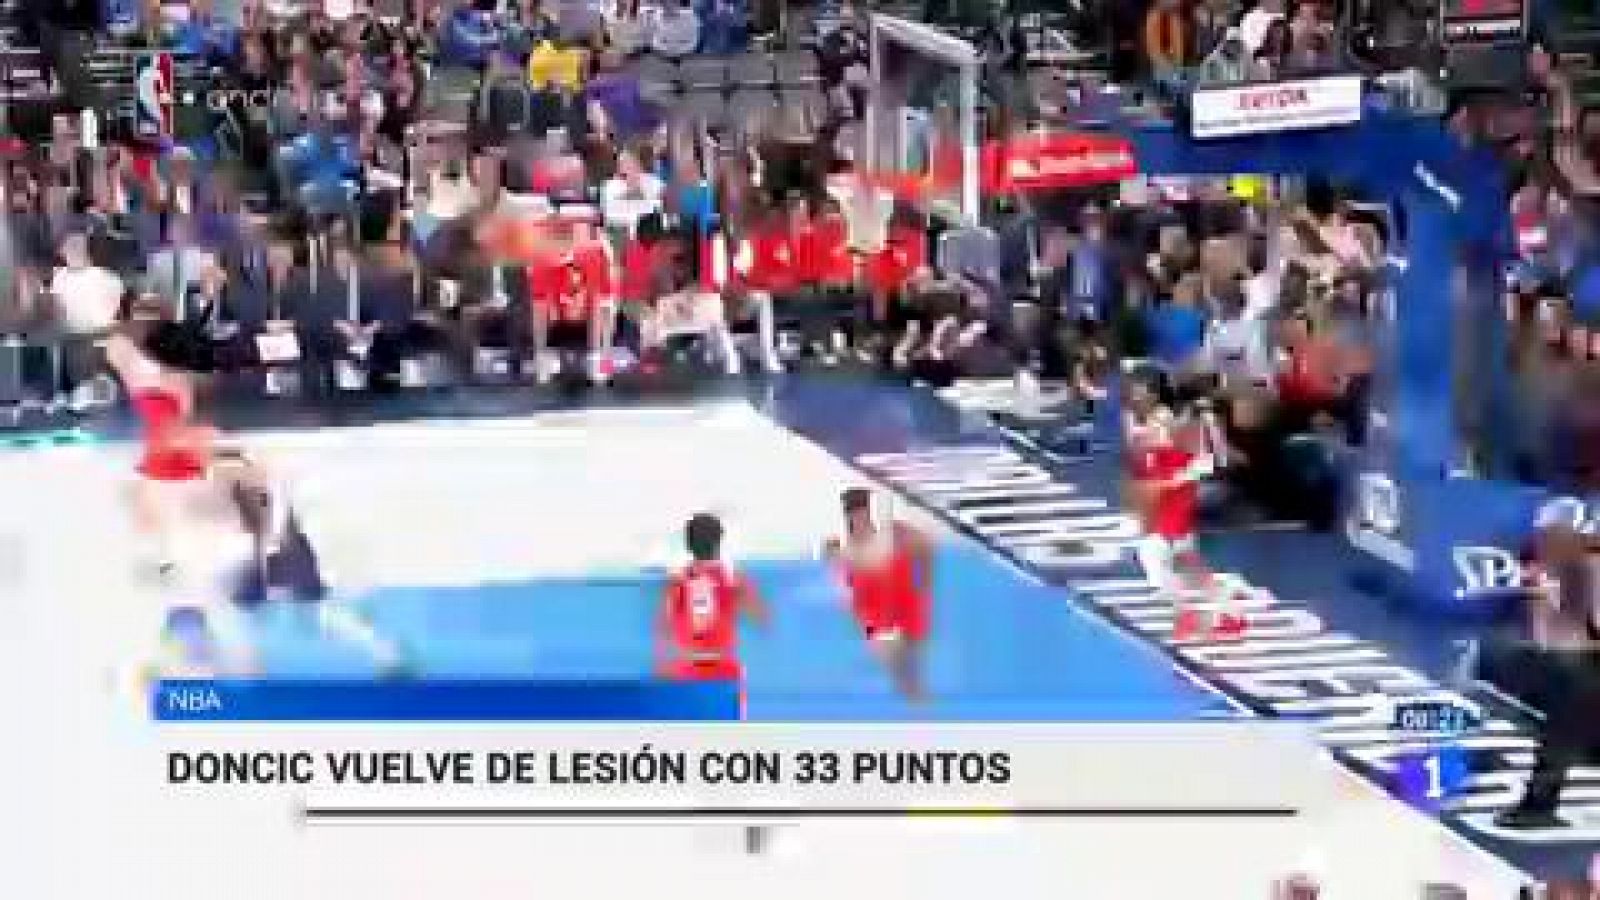 NBA | Regreso triunfal de Doncic con 33 puntos